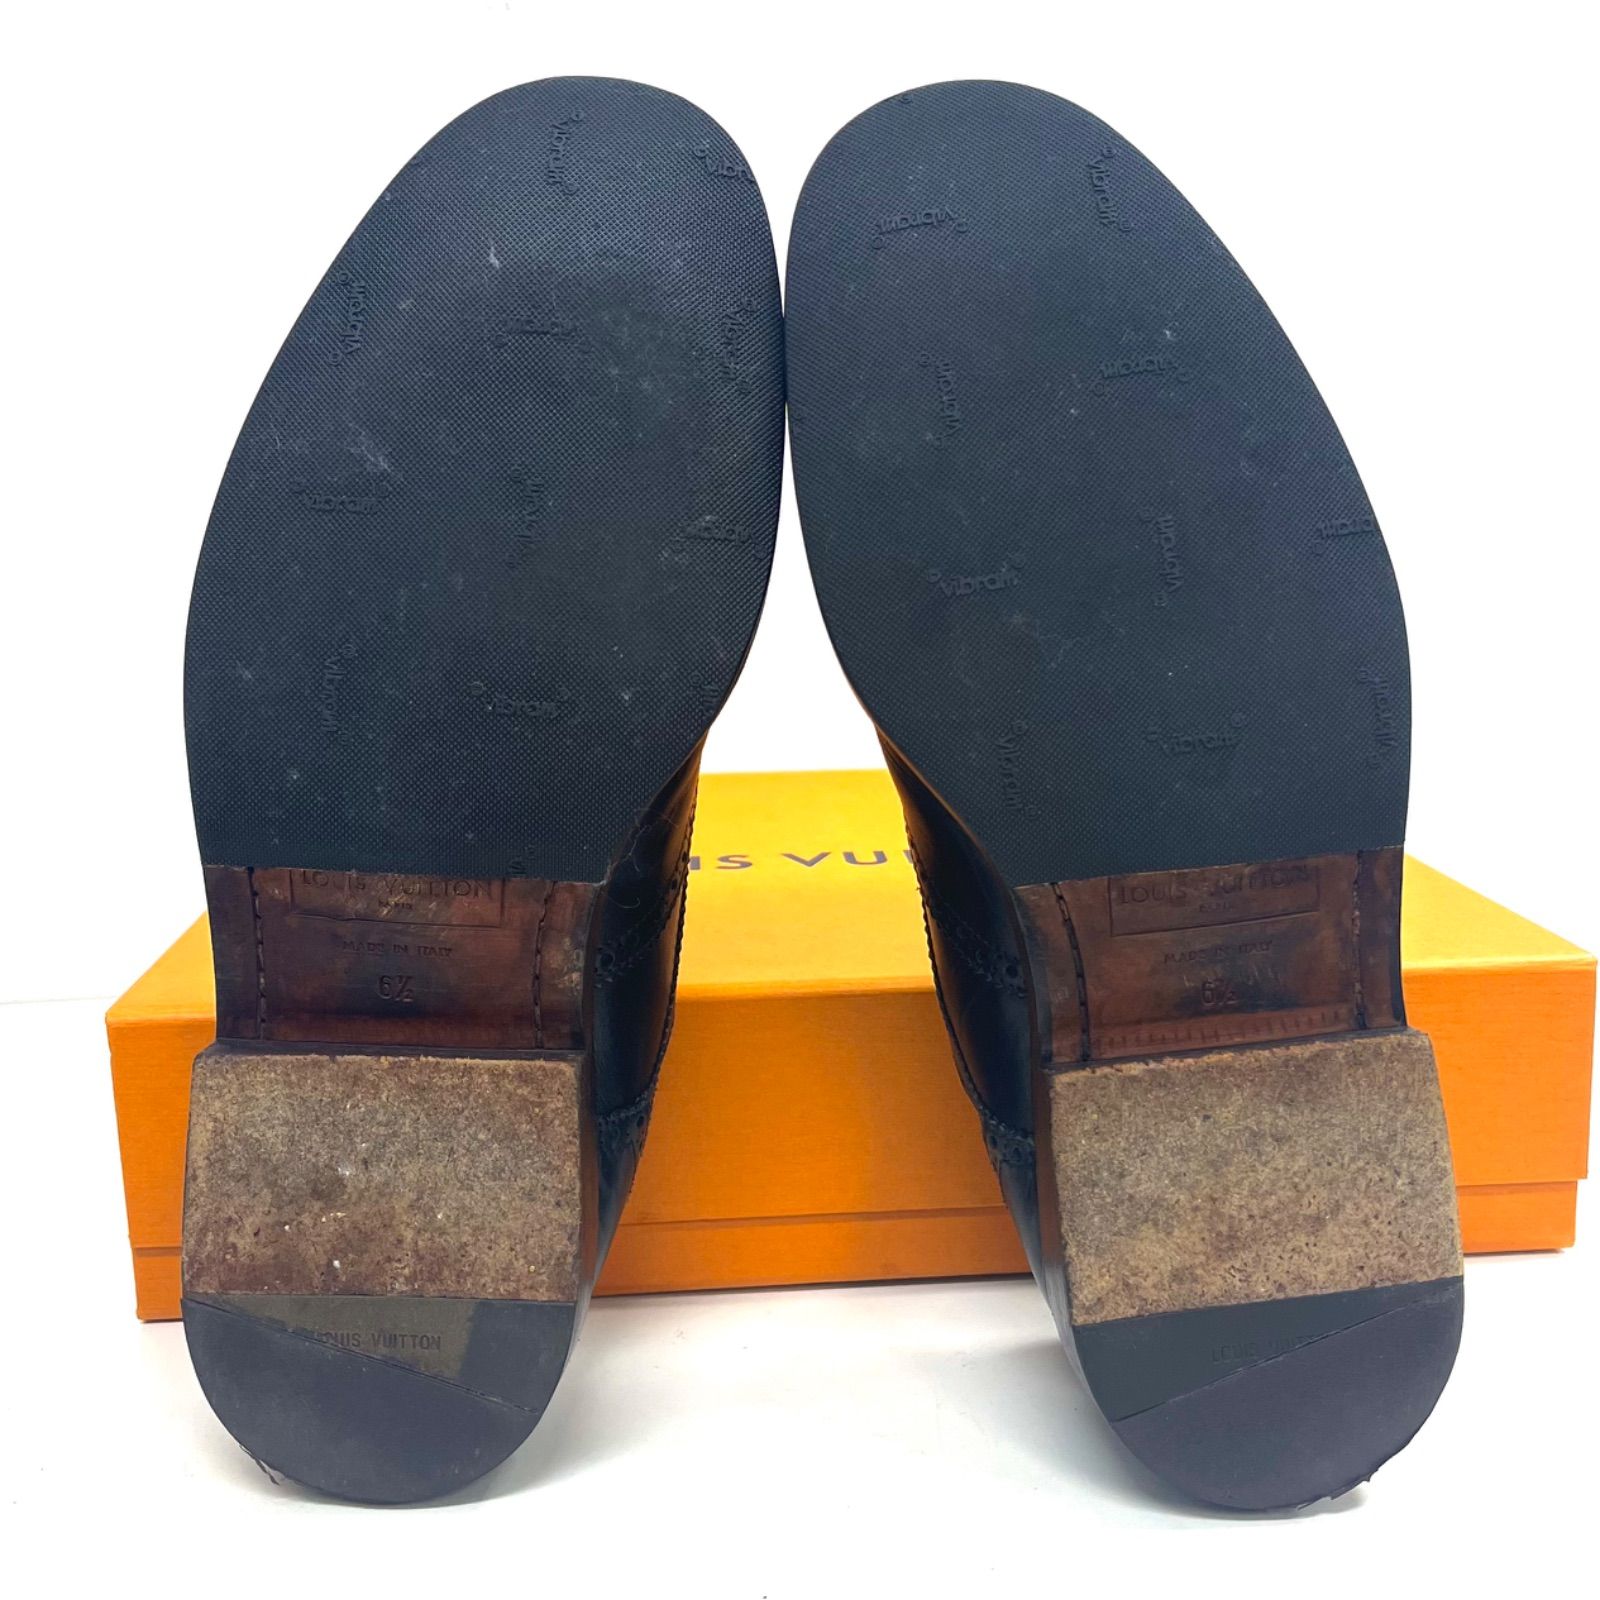 売り切り☆ルイヴィトン 革靴 ウイングチップ 黒 6.5(25.5)ビジネス⚠︎簡易ランク表